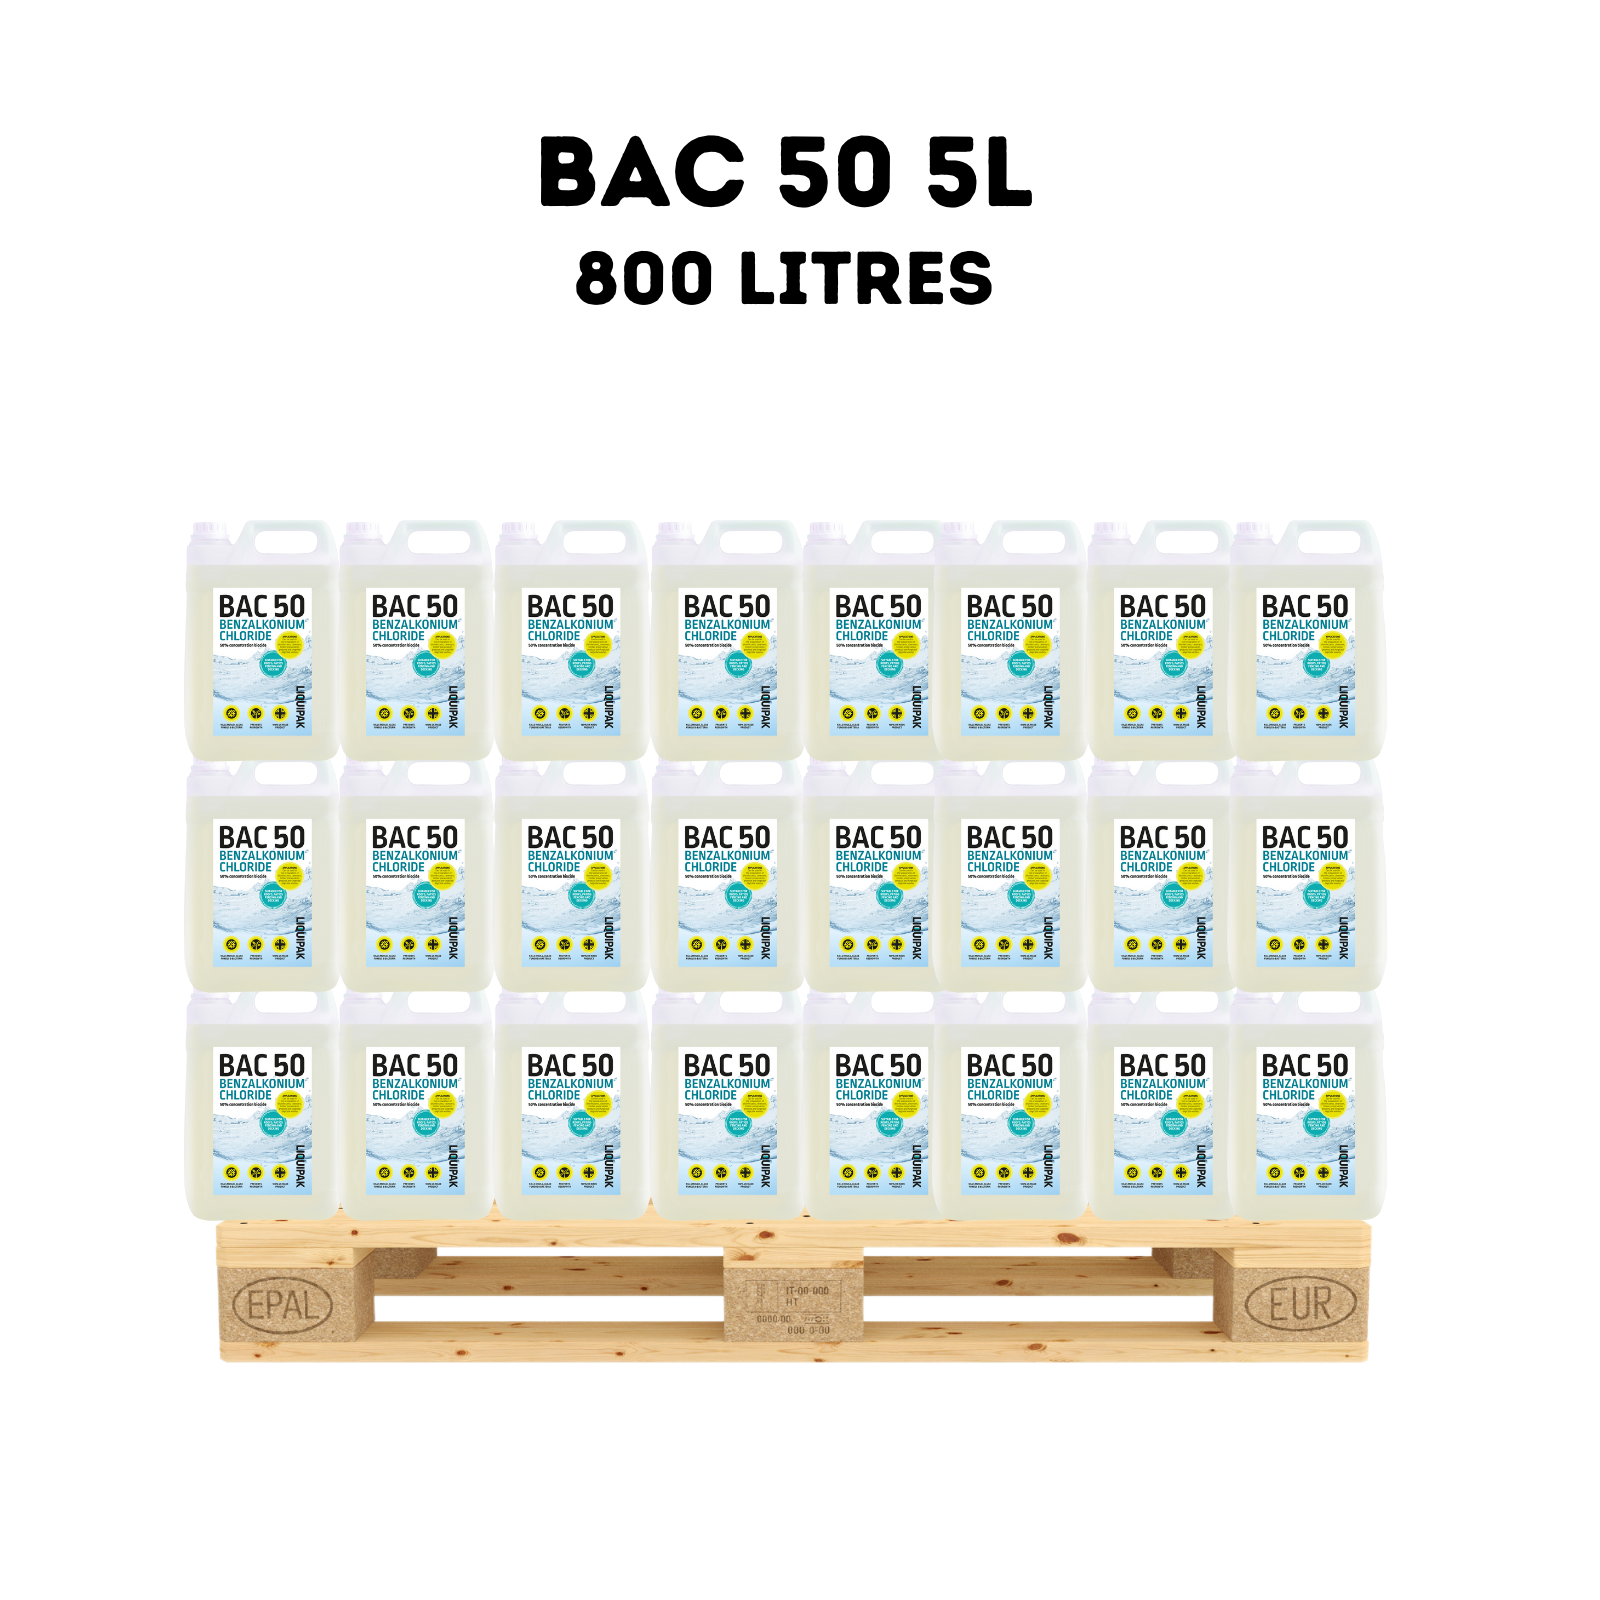 Liquipak - Bac 50 800 Litres